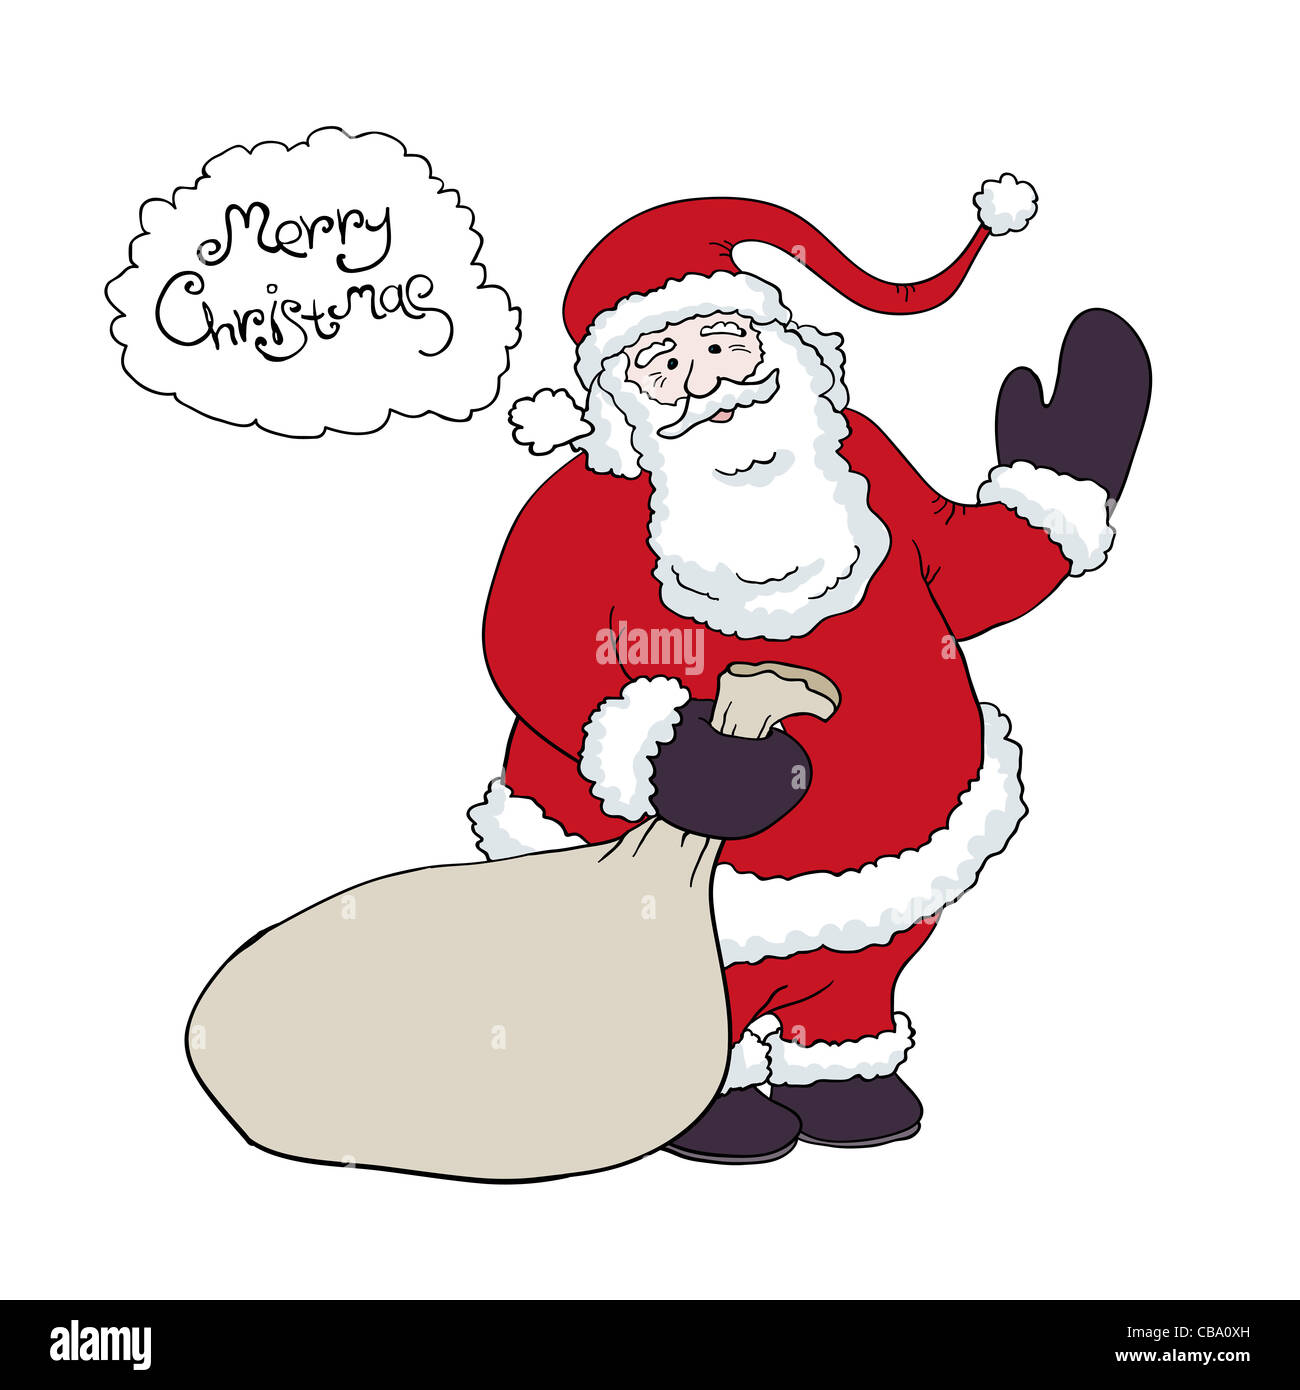 Weihnachtsmann einen Sack Geschenke Glückwünsche sagt im Ballon. Vektor-Illustration, eps8. Stockfoto